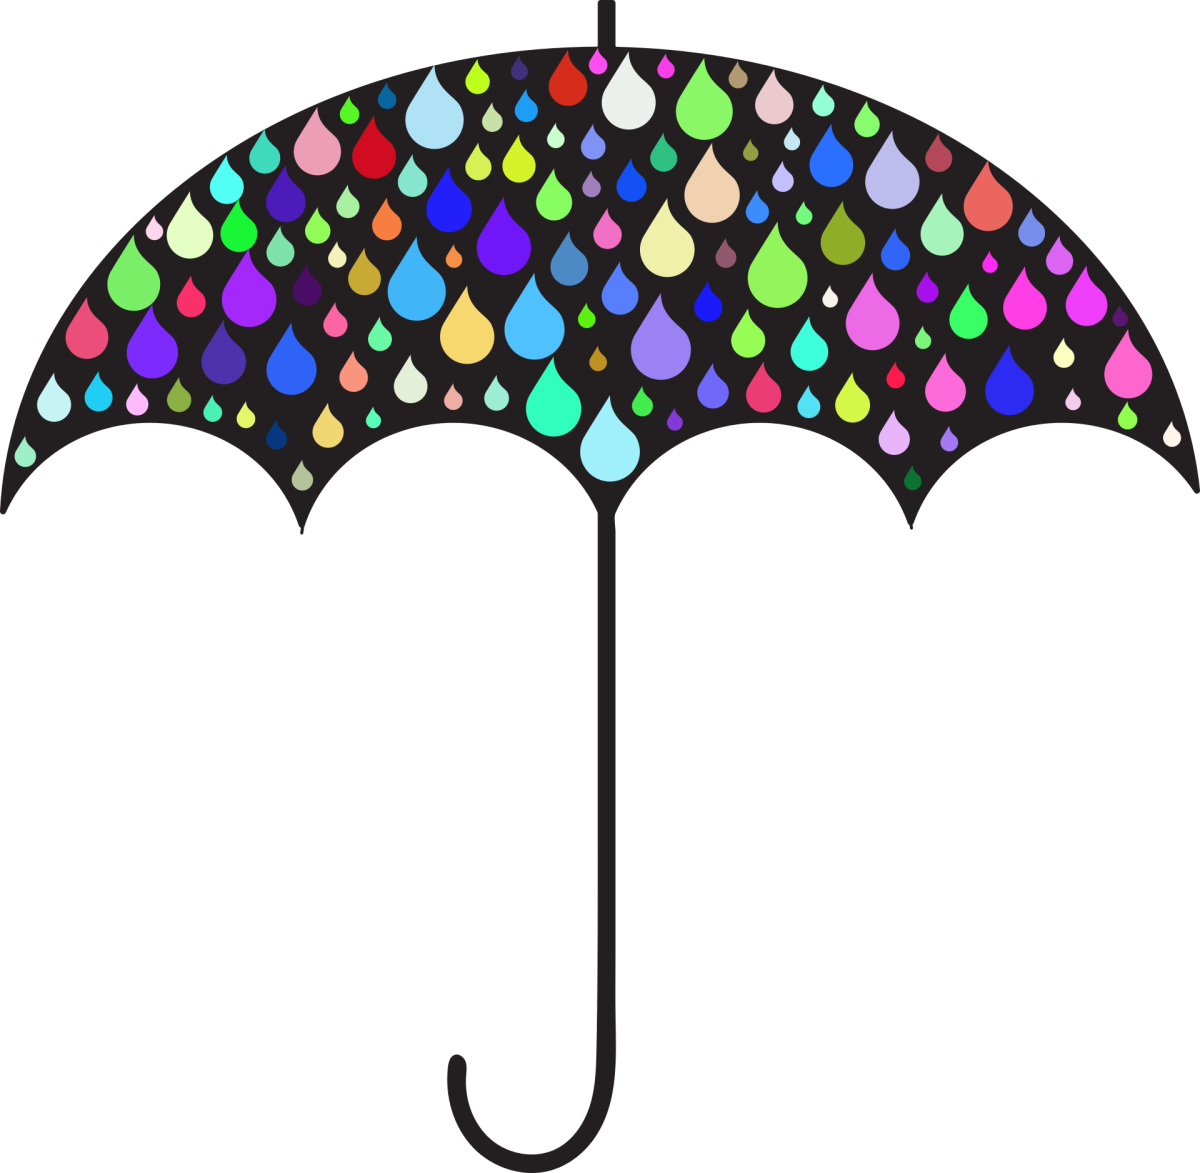 Multicolored umbrella illustration 